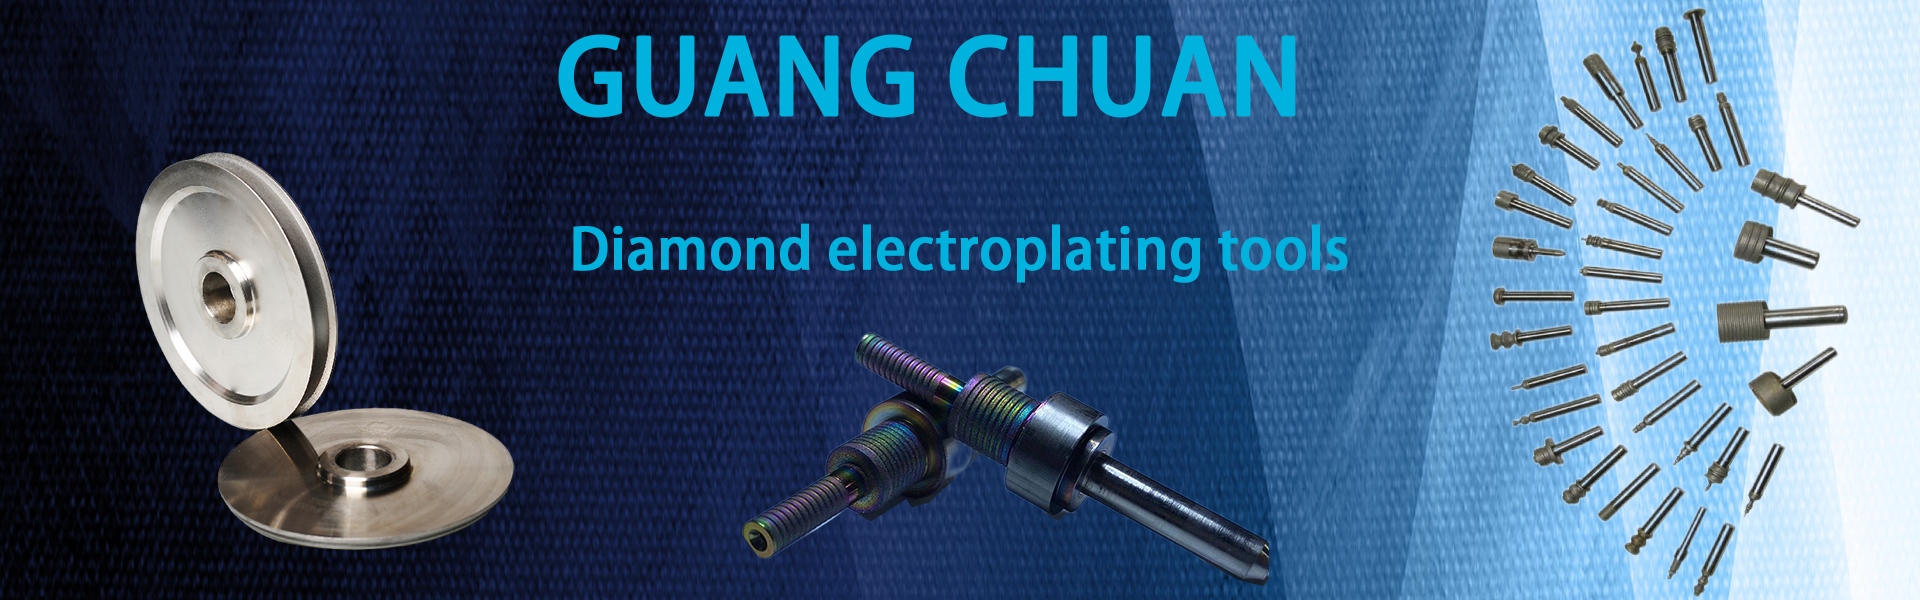 Διαμάντι λείανσης, εργαλείο διαμαντιών, τρυπάνια,Dongguan Guangchuan Abrasives Technology Co., Ltd